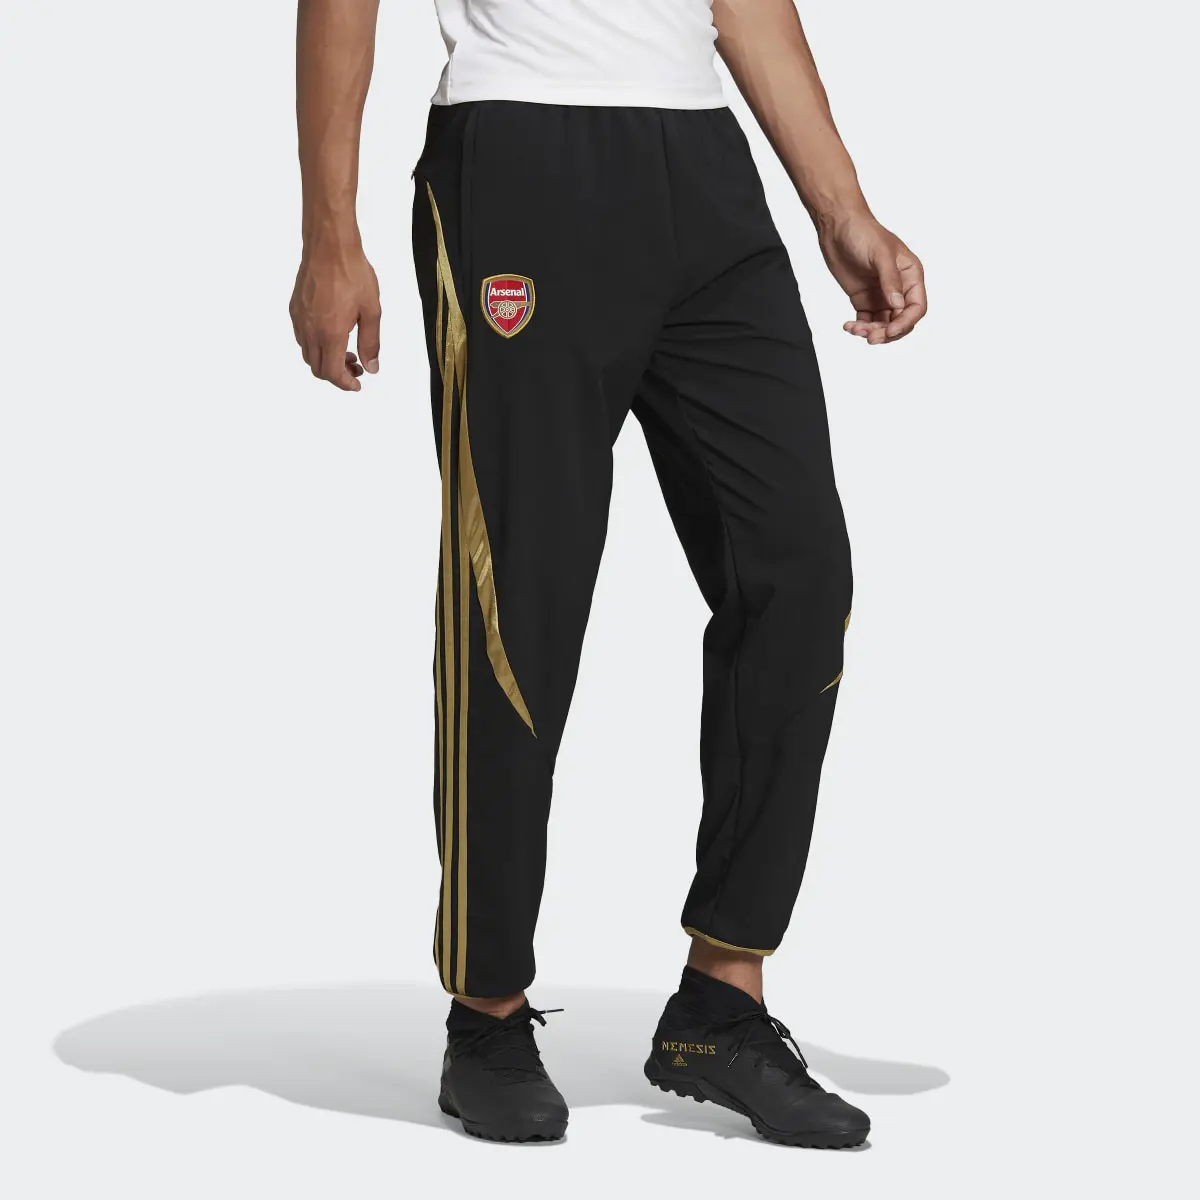 Adidas Pants Teamgeist Arsenal Tejidos. 1